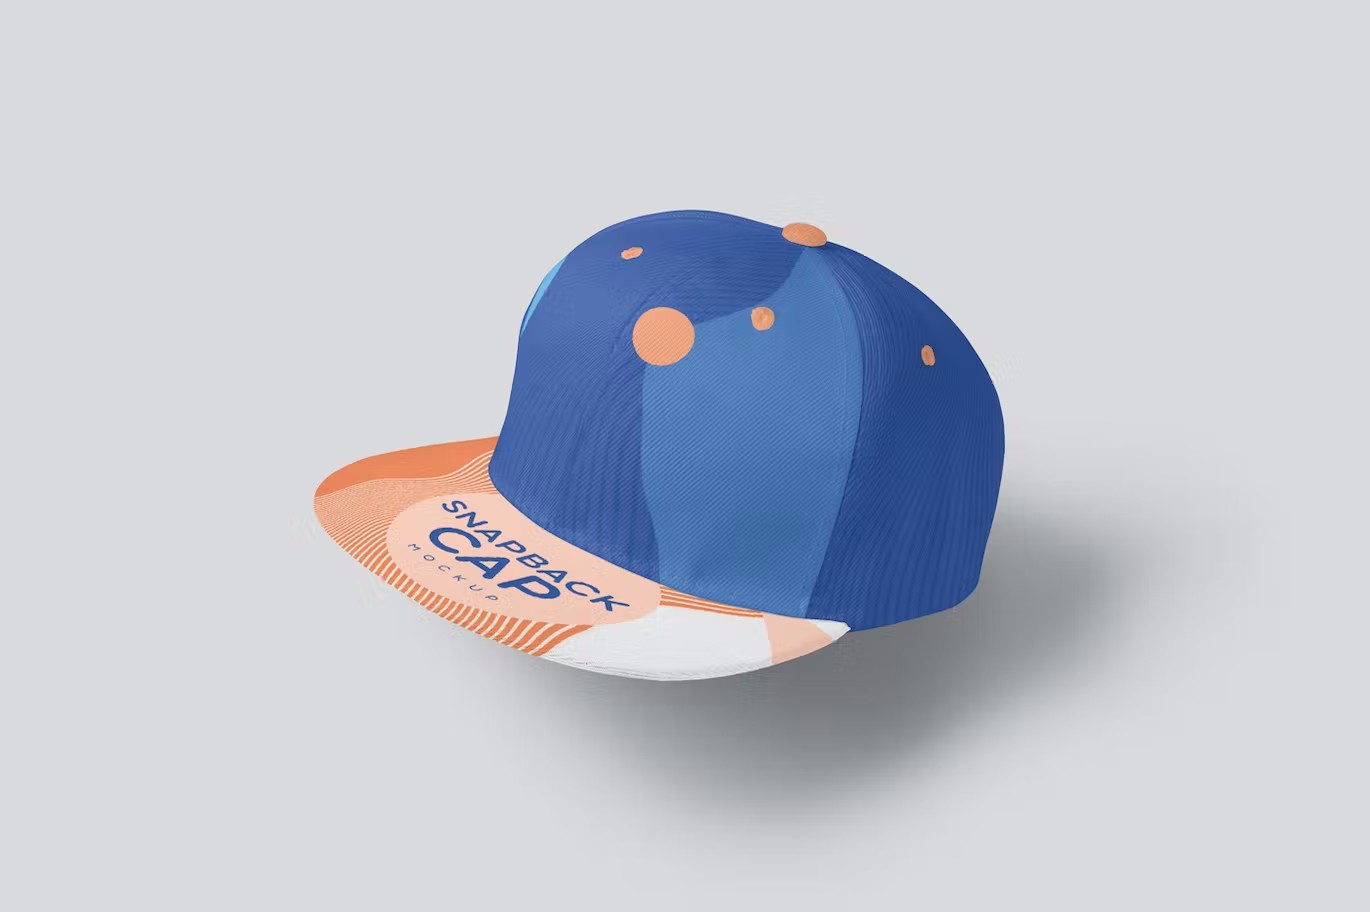 棒球帽运动品牌设计样机 Snapback Cap Mockups 样机素材 第3张